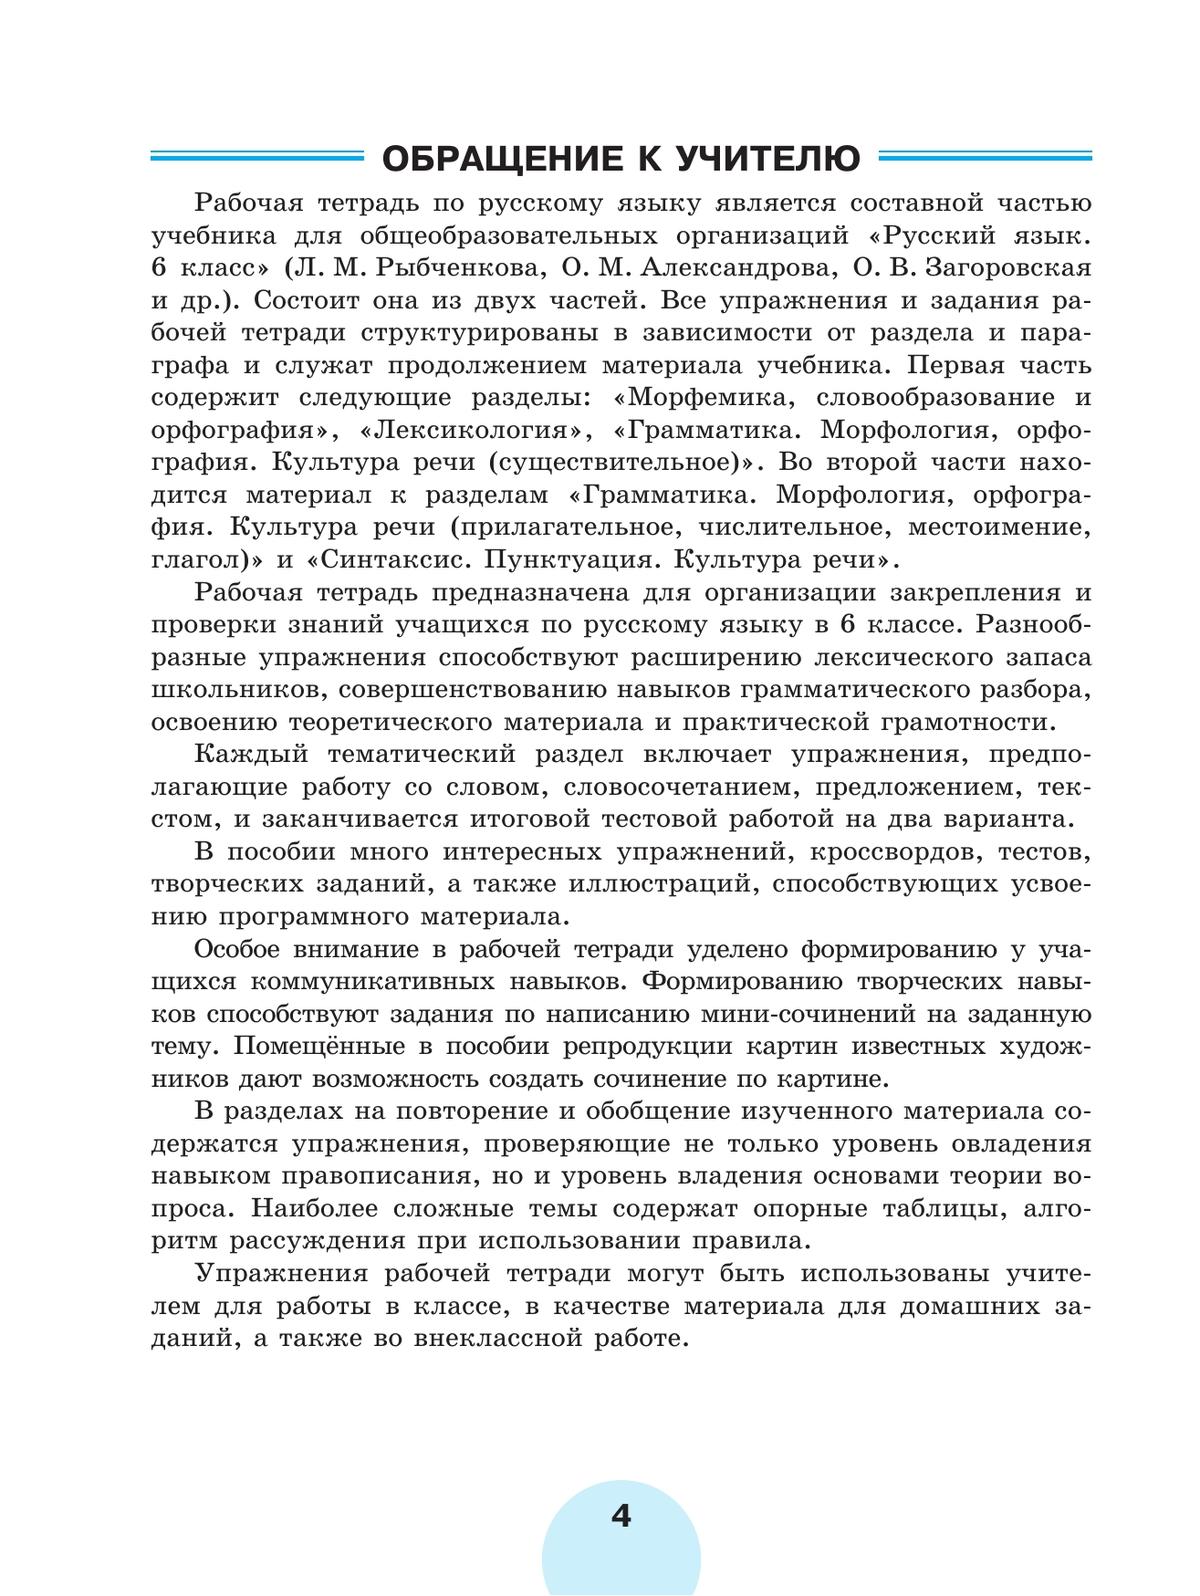 Русский язык. Рабочая тетрадь. 6 класс. В 2 ч. Часть 2 5